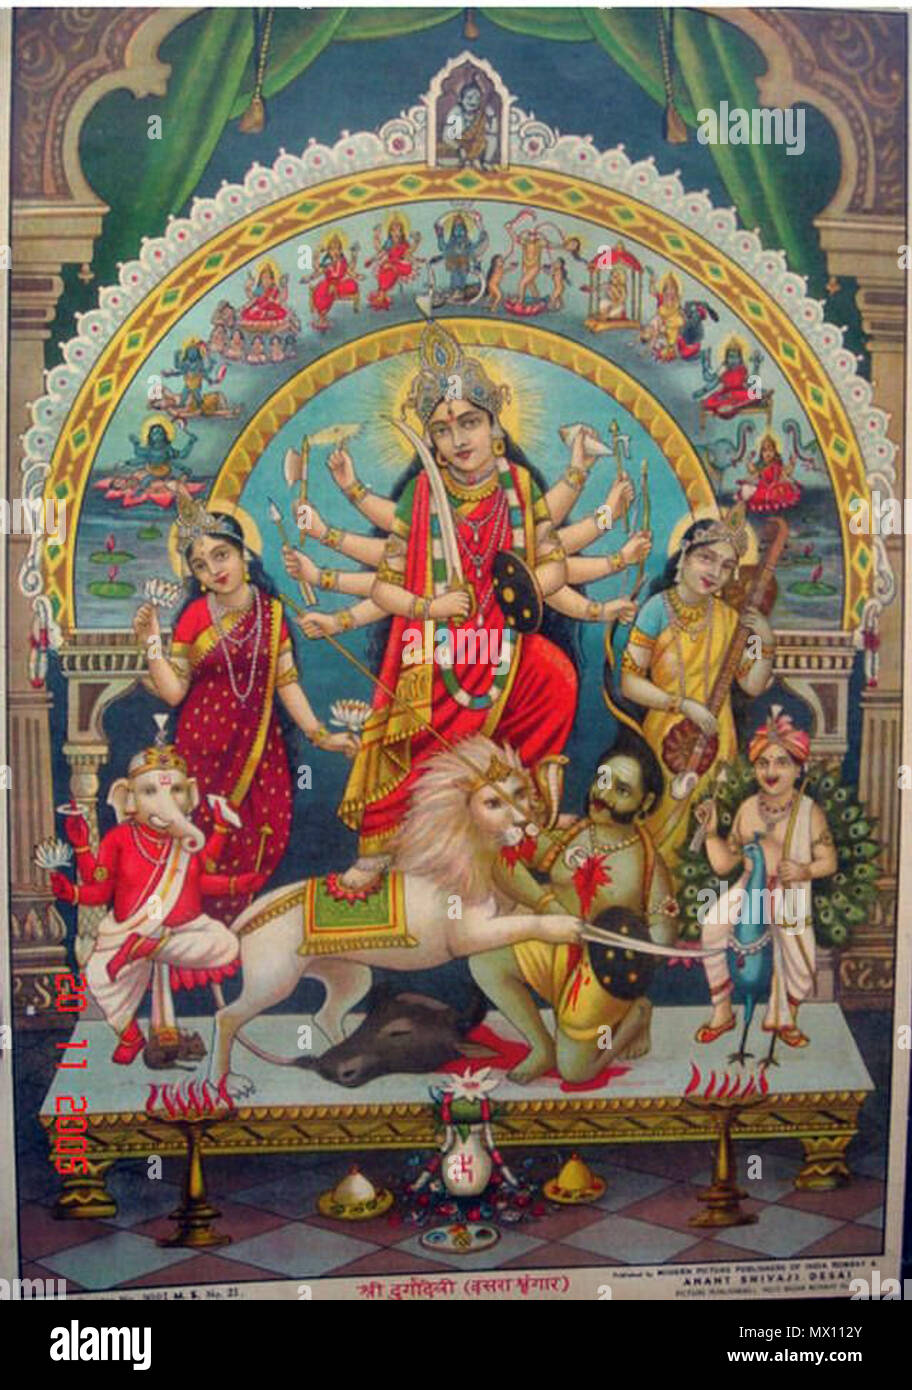 . Englisch: Ein Bild von Durga unter einem Bogen anzeigen Der Mahavidyas, mit Shiva an der Spitze; 1930 Quelle: ebay, 26.04.2006. 1930. Unbekannt 174 Durga 1930s Stockfoto